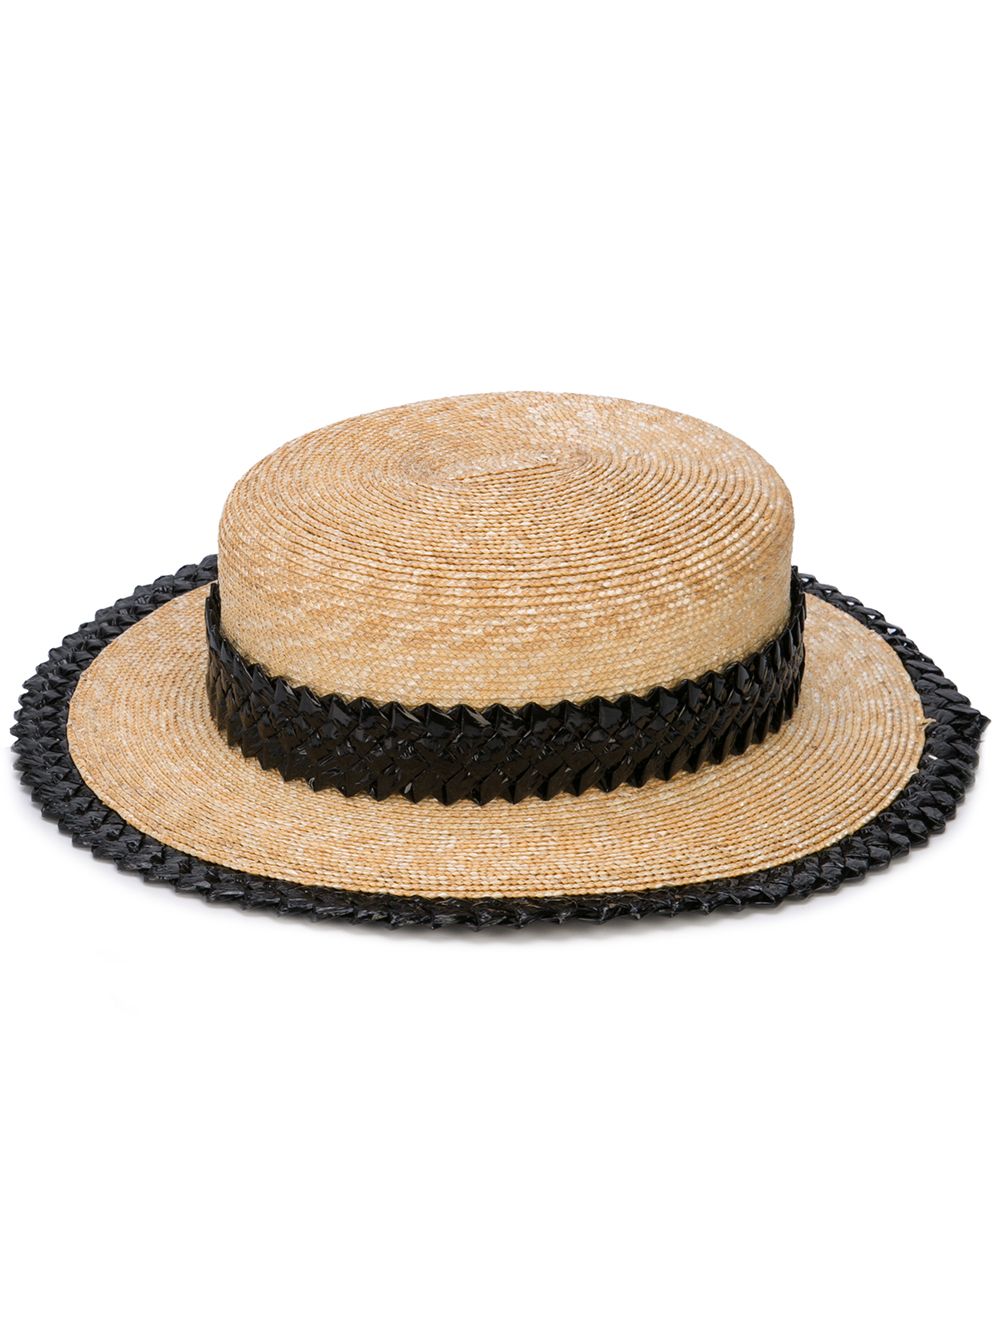 фото Gigi Burris Millinery соломенная шляпа с узкими полями